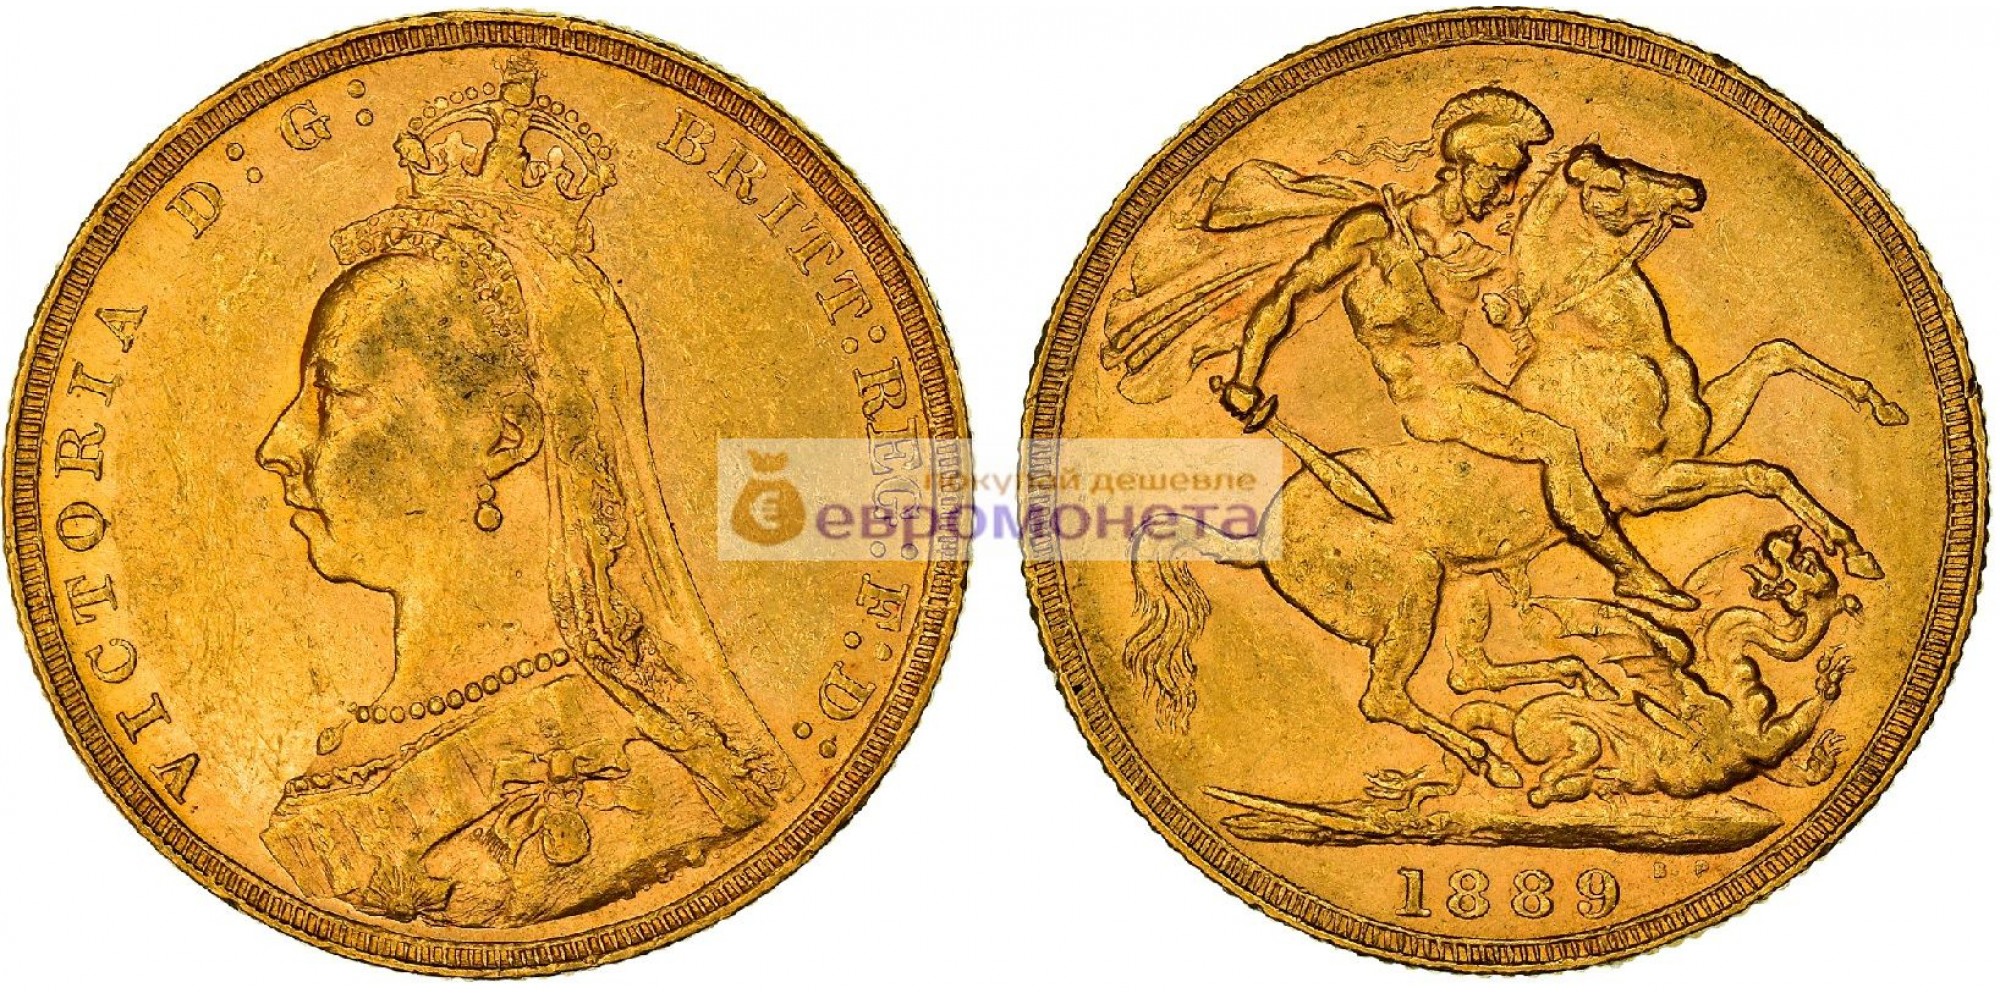 Великобритания 1 фунт (соверен) 1889 год. Королева Виктория. Золото